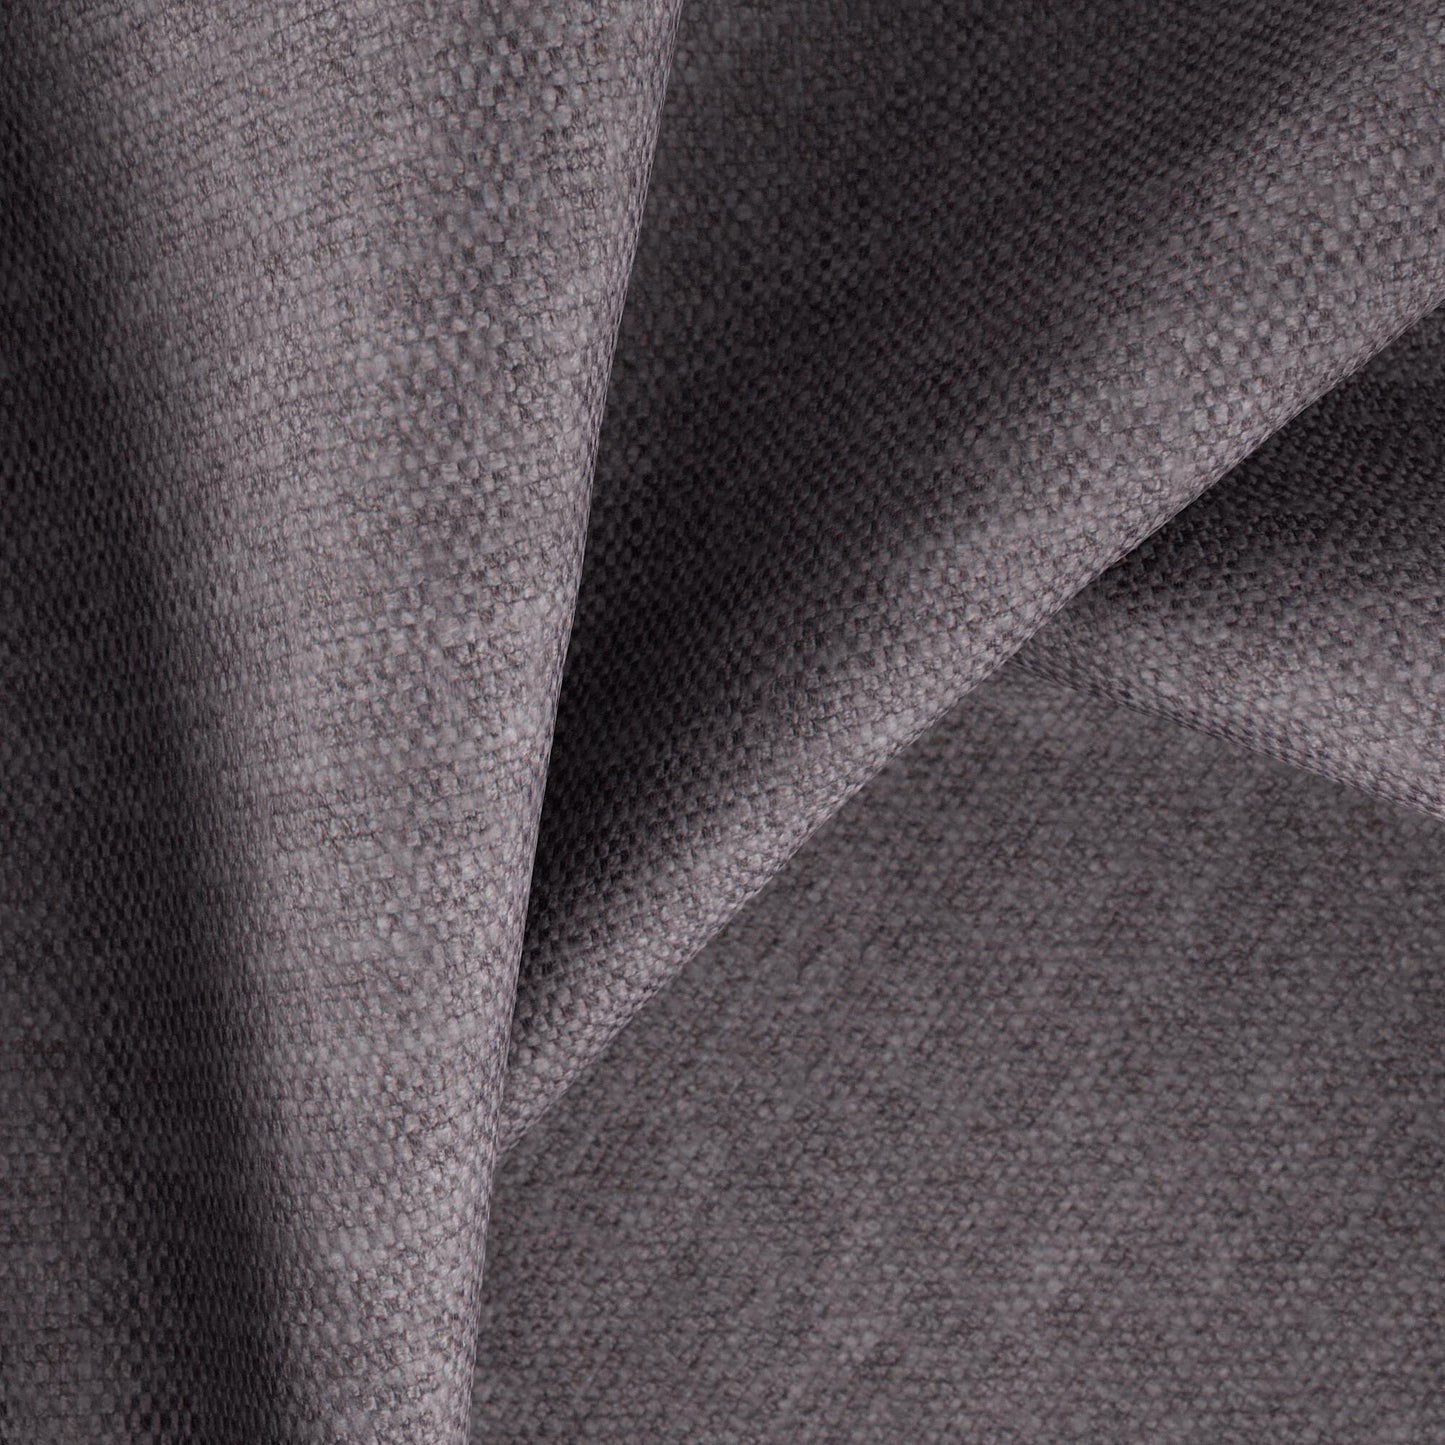 Home Fabrics - FibreGuard - Colourwash - 07-Charcoal - Fabric per Meter